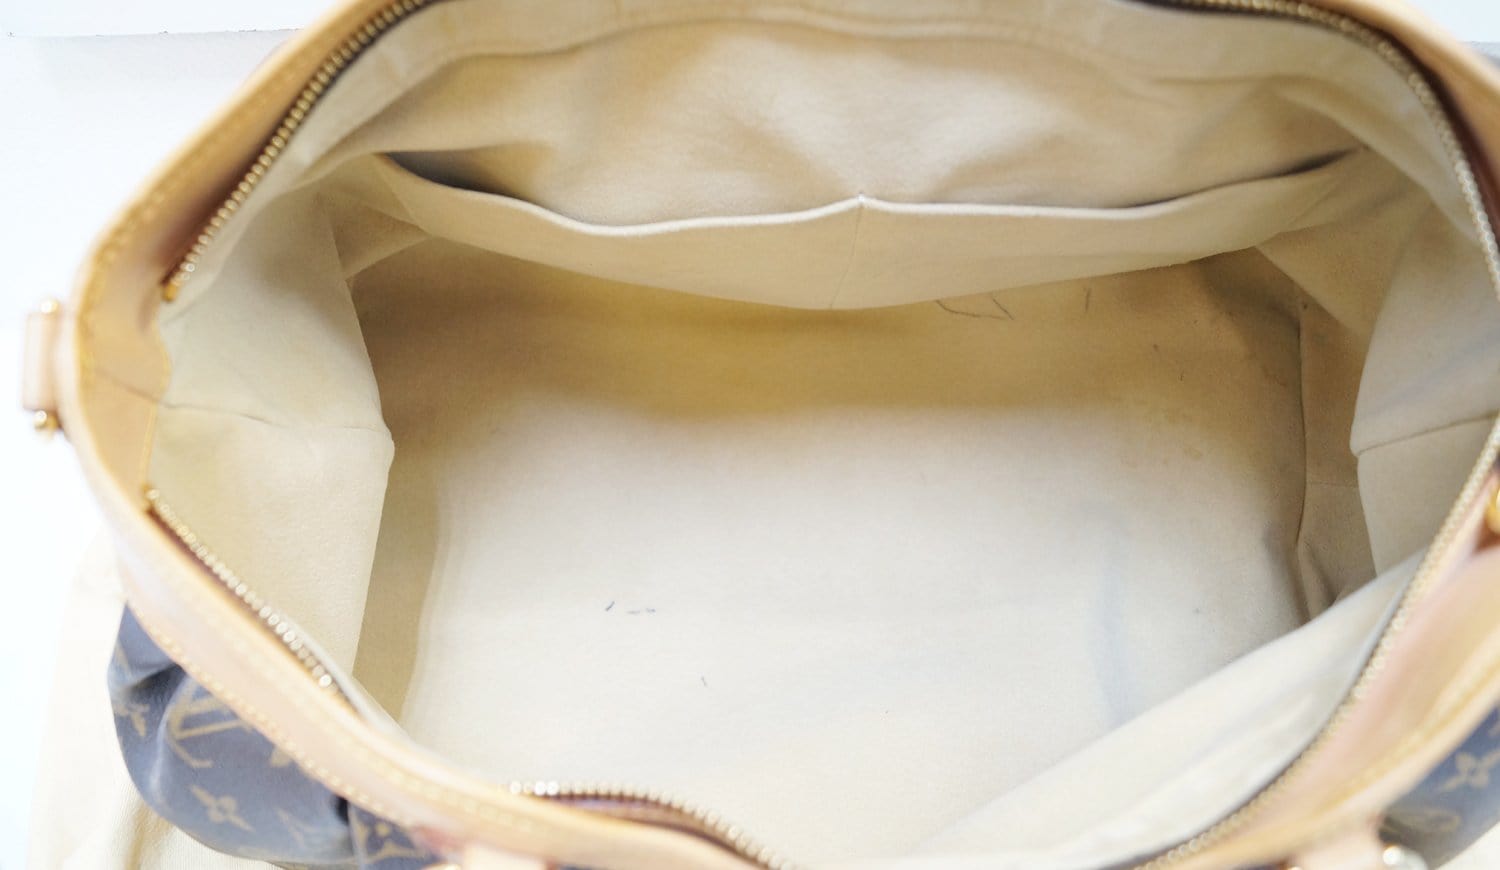 Boétie MM Monogram Canvas - Handbags